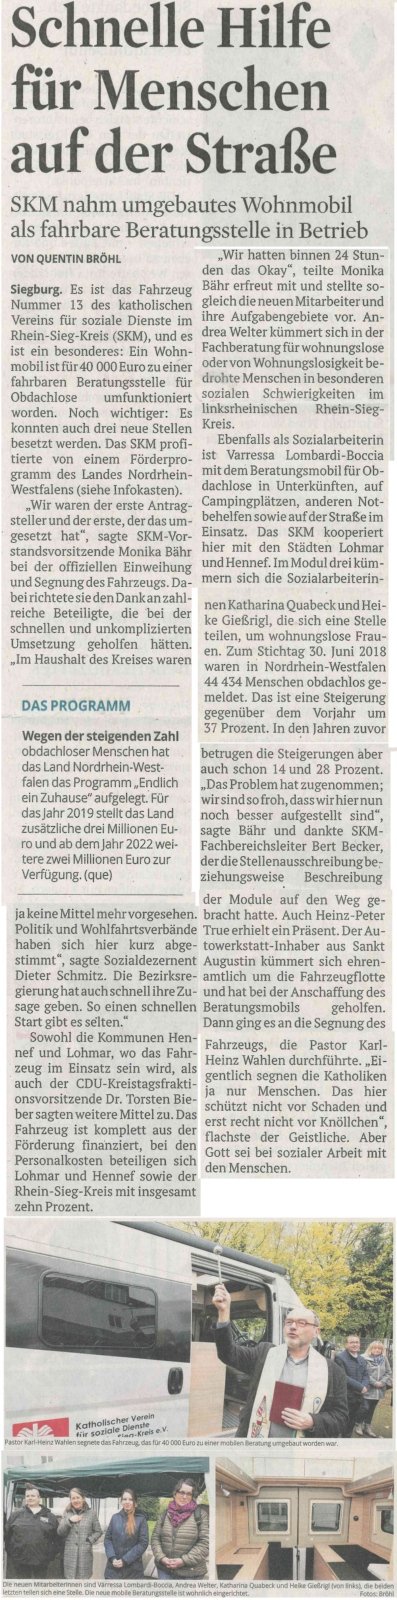 WLH-Kölner Stadt-Anzeiger 8.11.2019.jpg